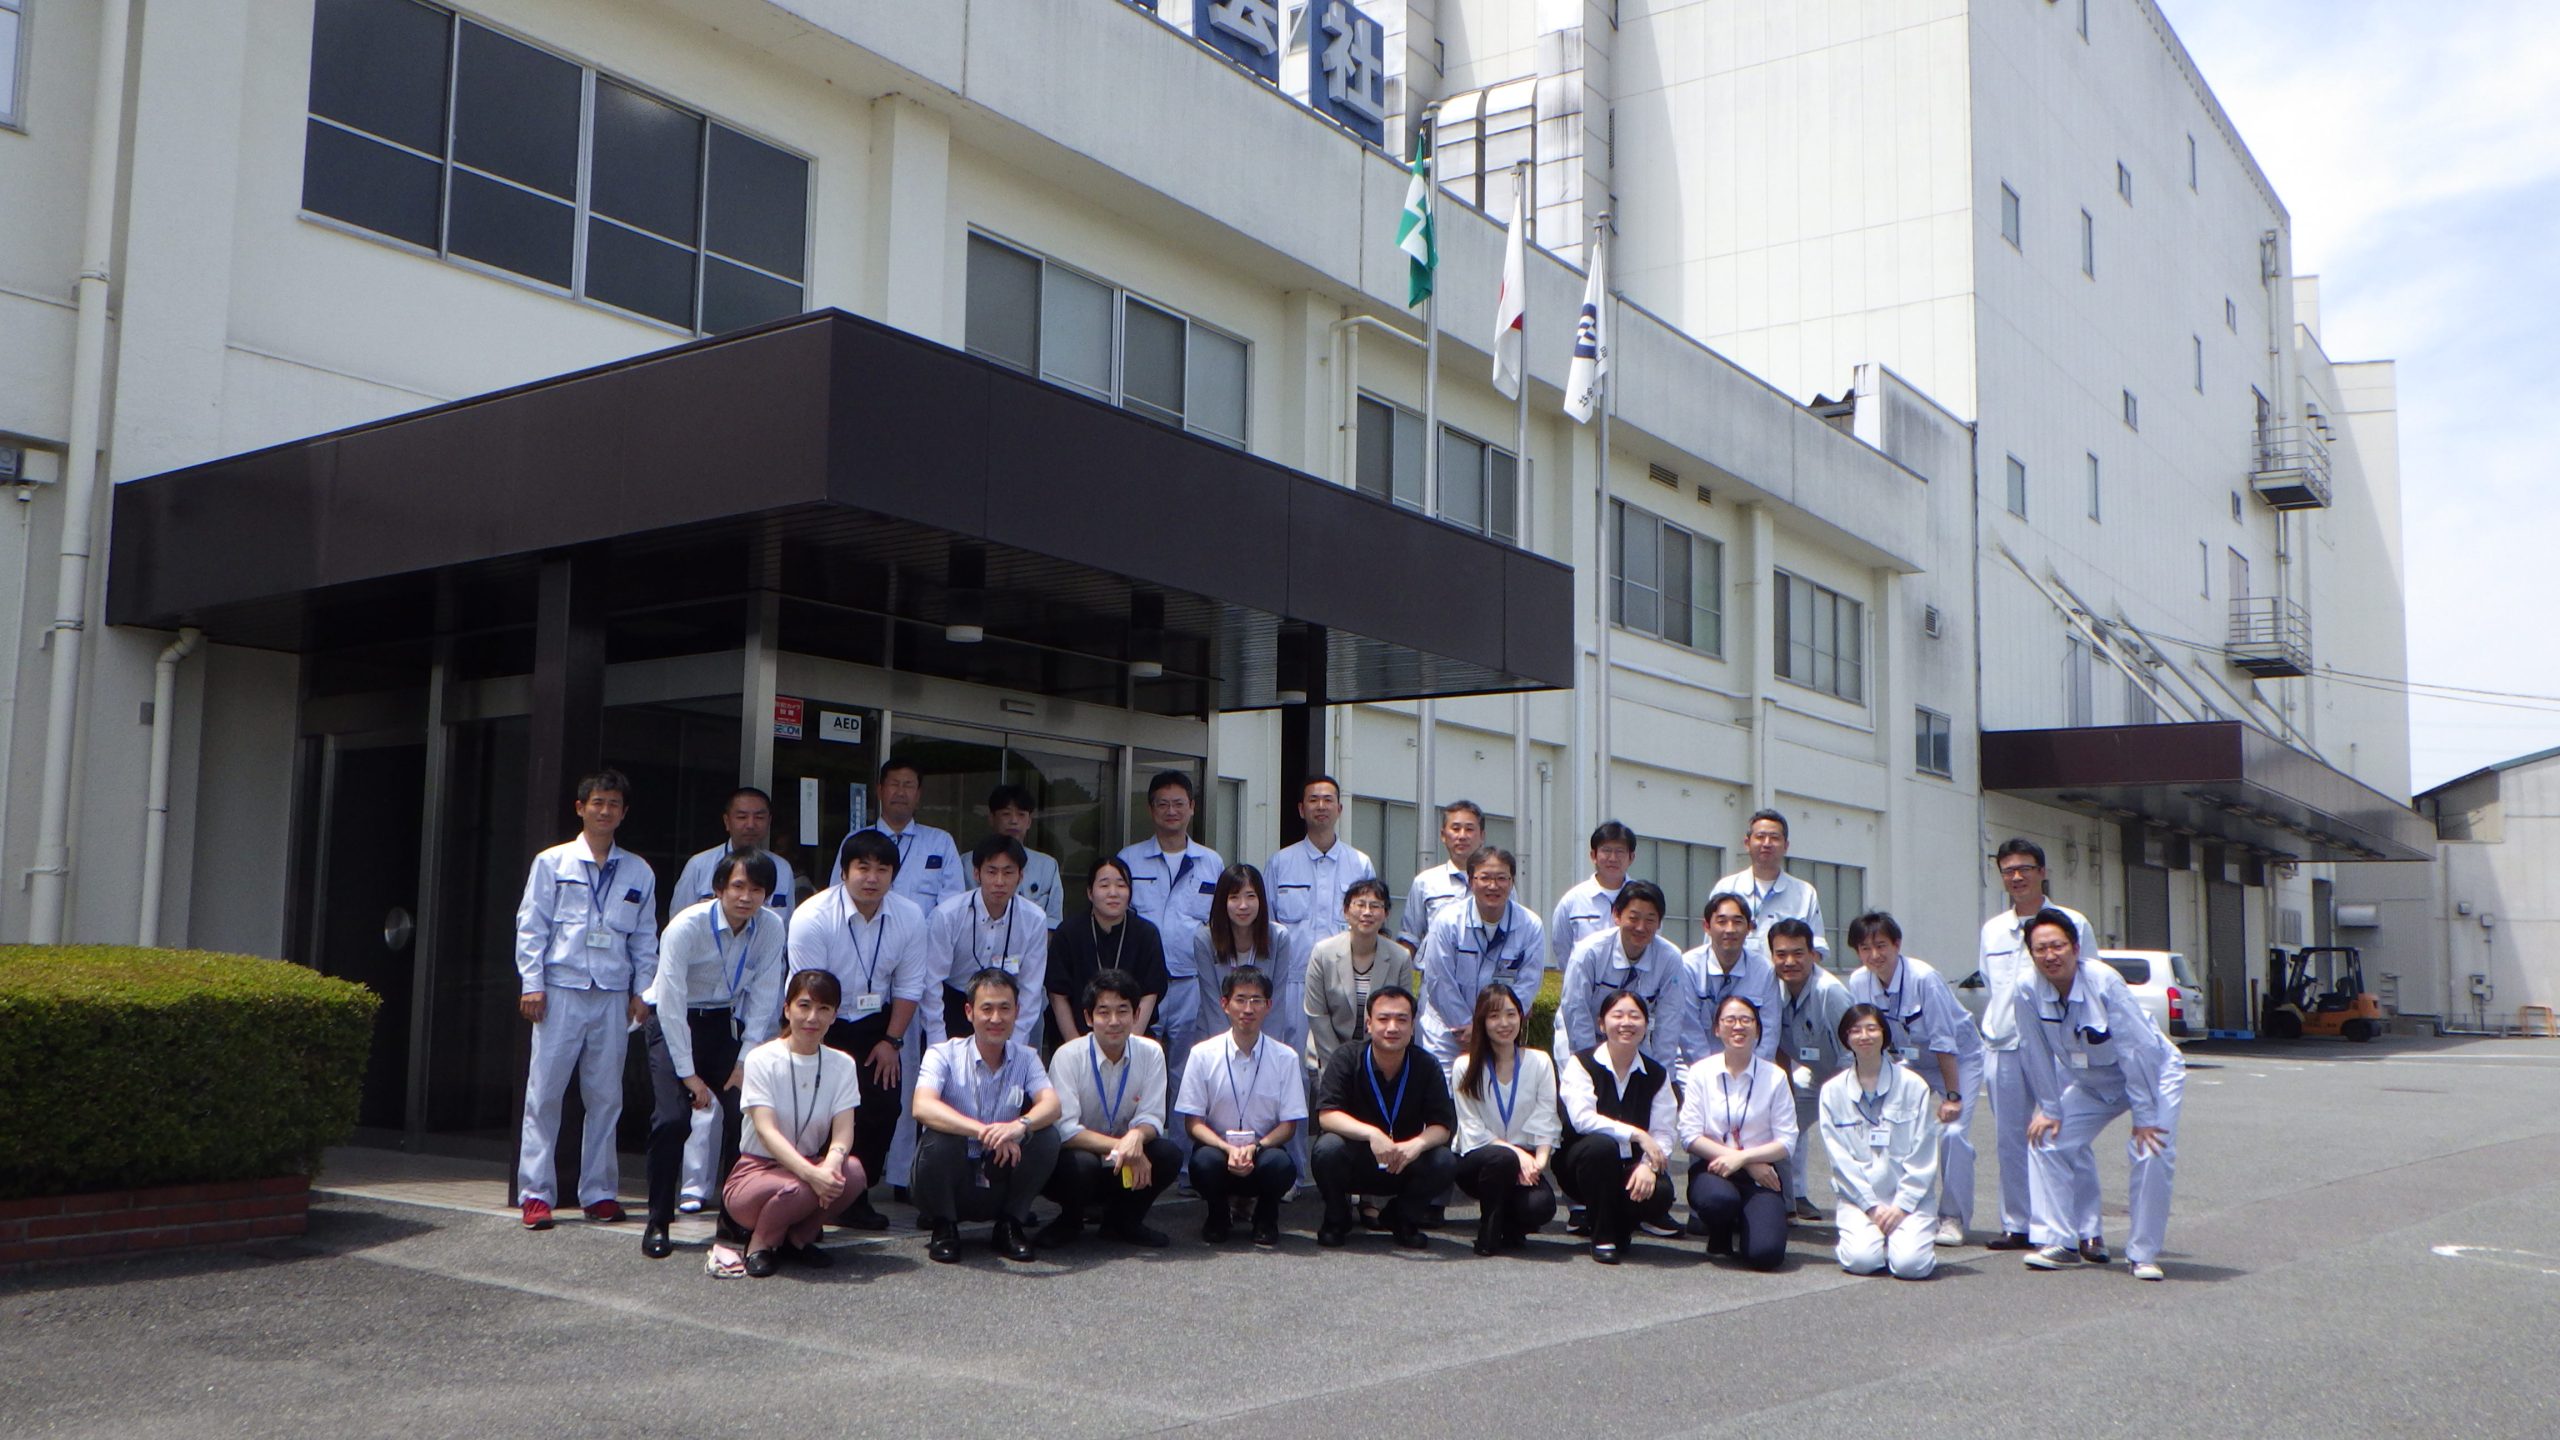 近畿府県薬務主管課長会GMPチームによる合同模擬査察が実施されました。